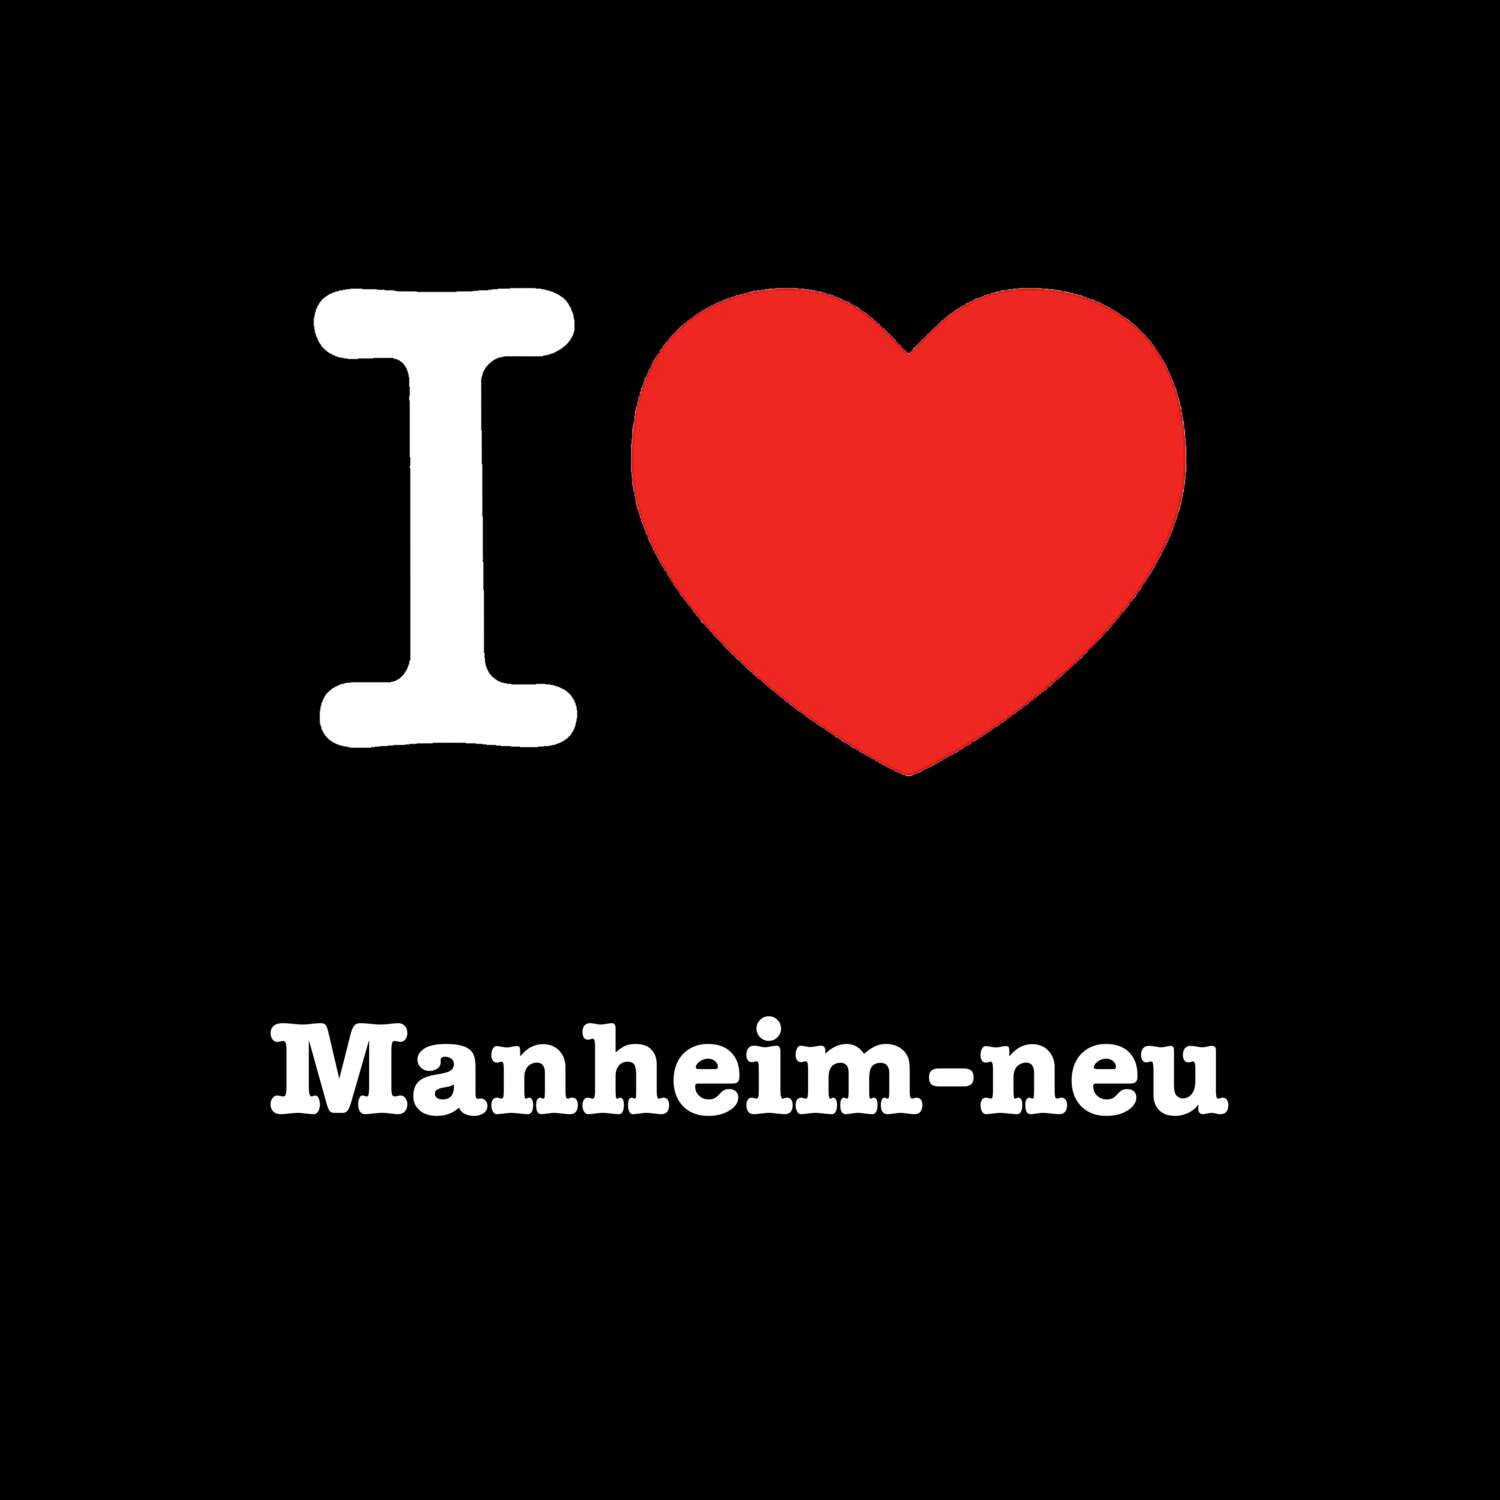 Manheim-neu T-Shirt »I love«